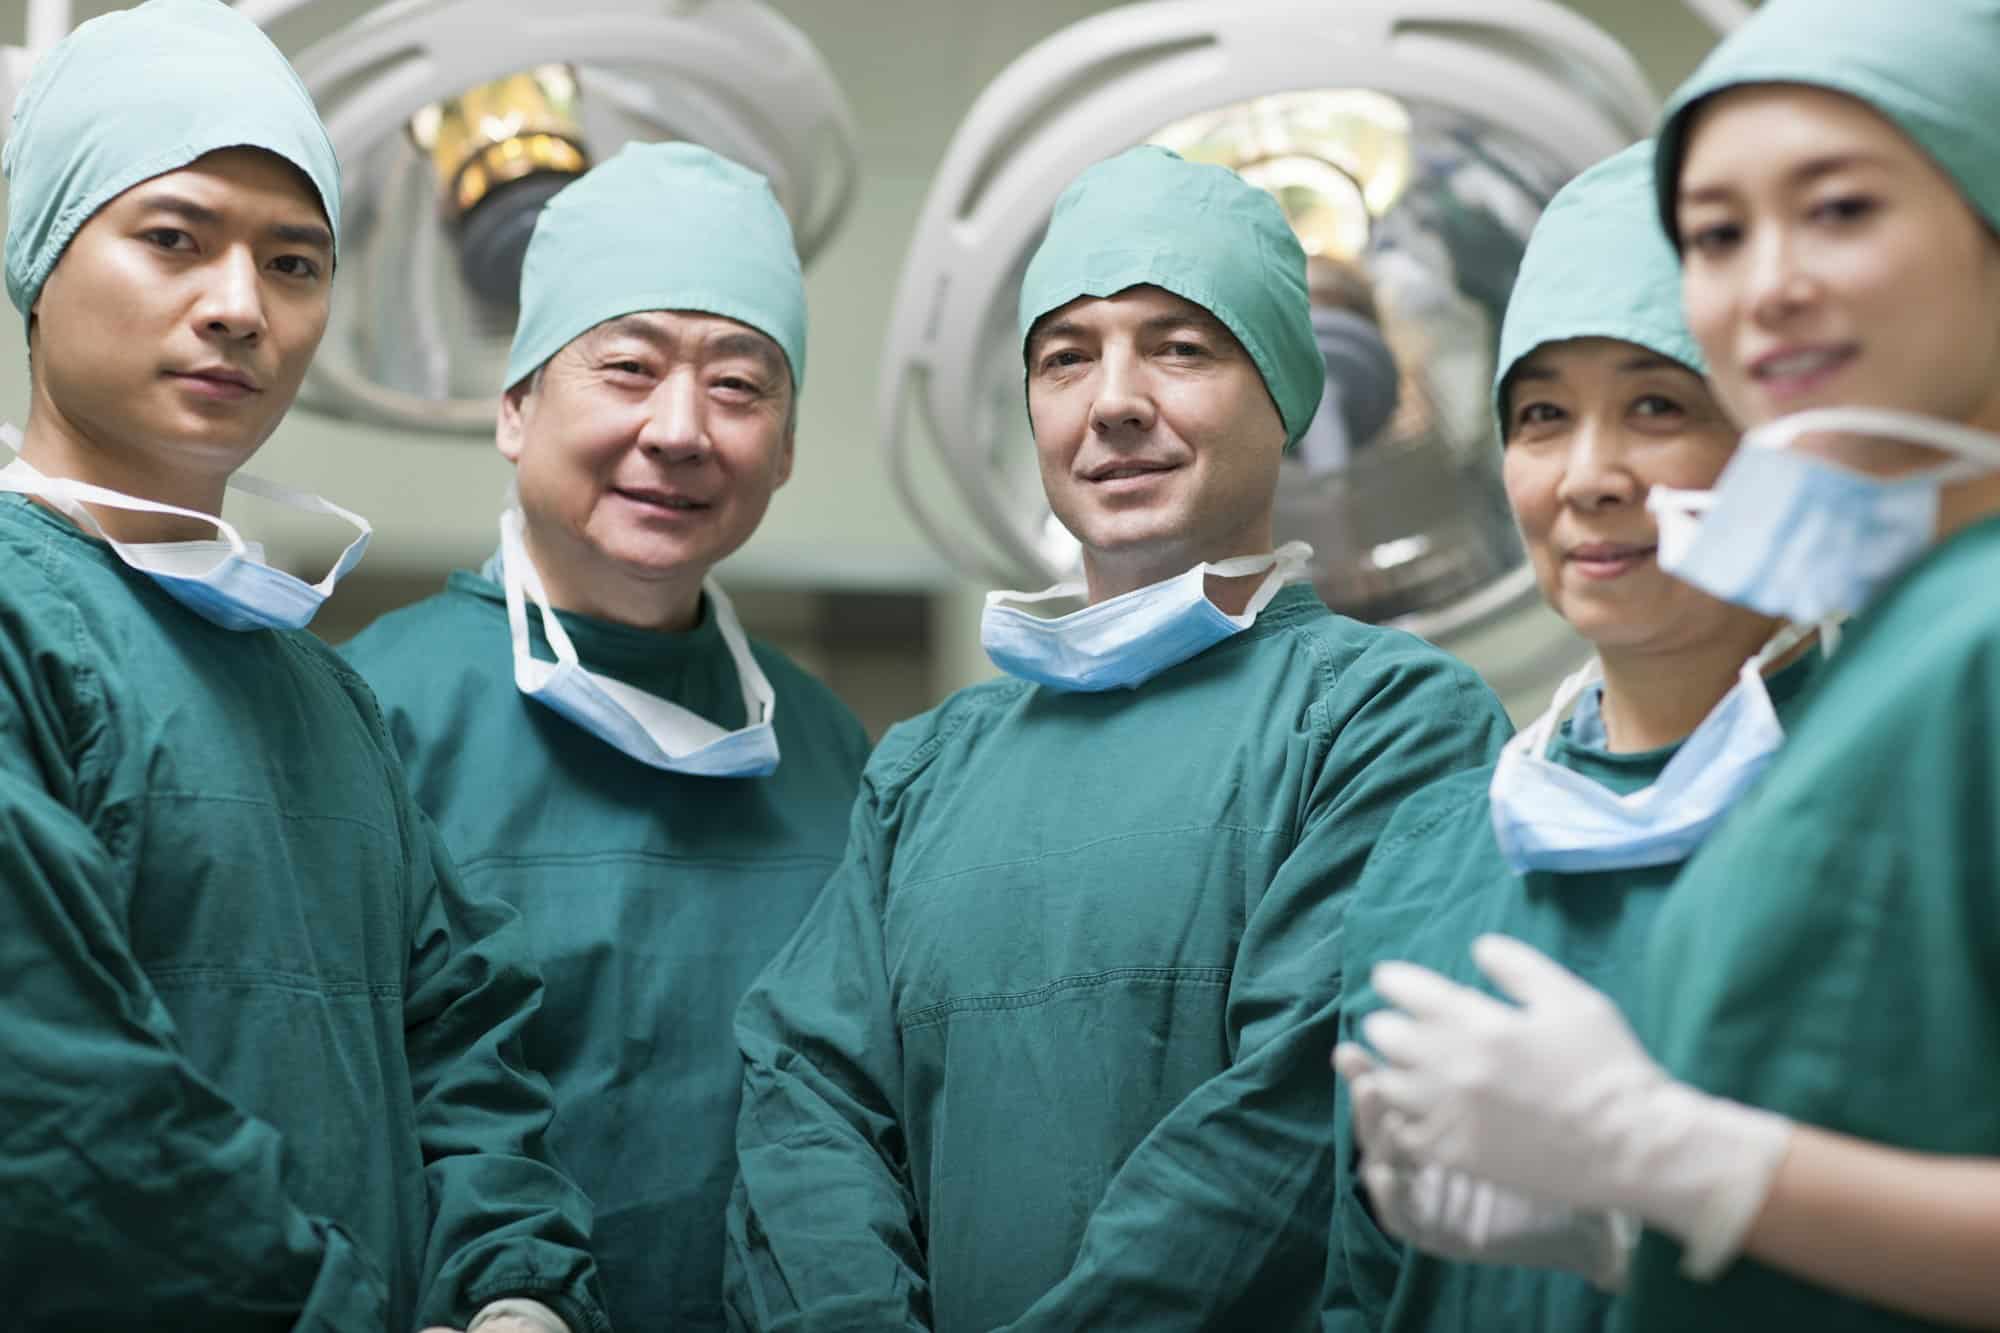 Χειρουργείο: Ποιες επεμβάσεις είναι πιο επικίνδυνες για τους ηλικιωμένους